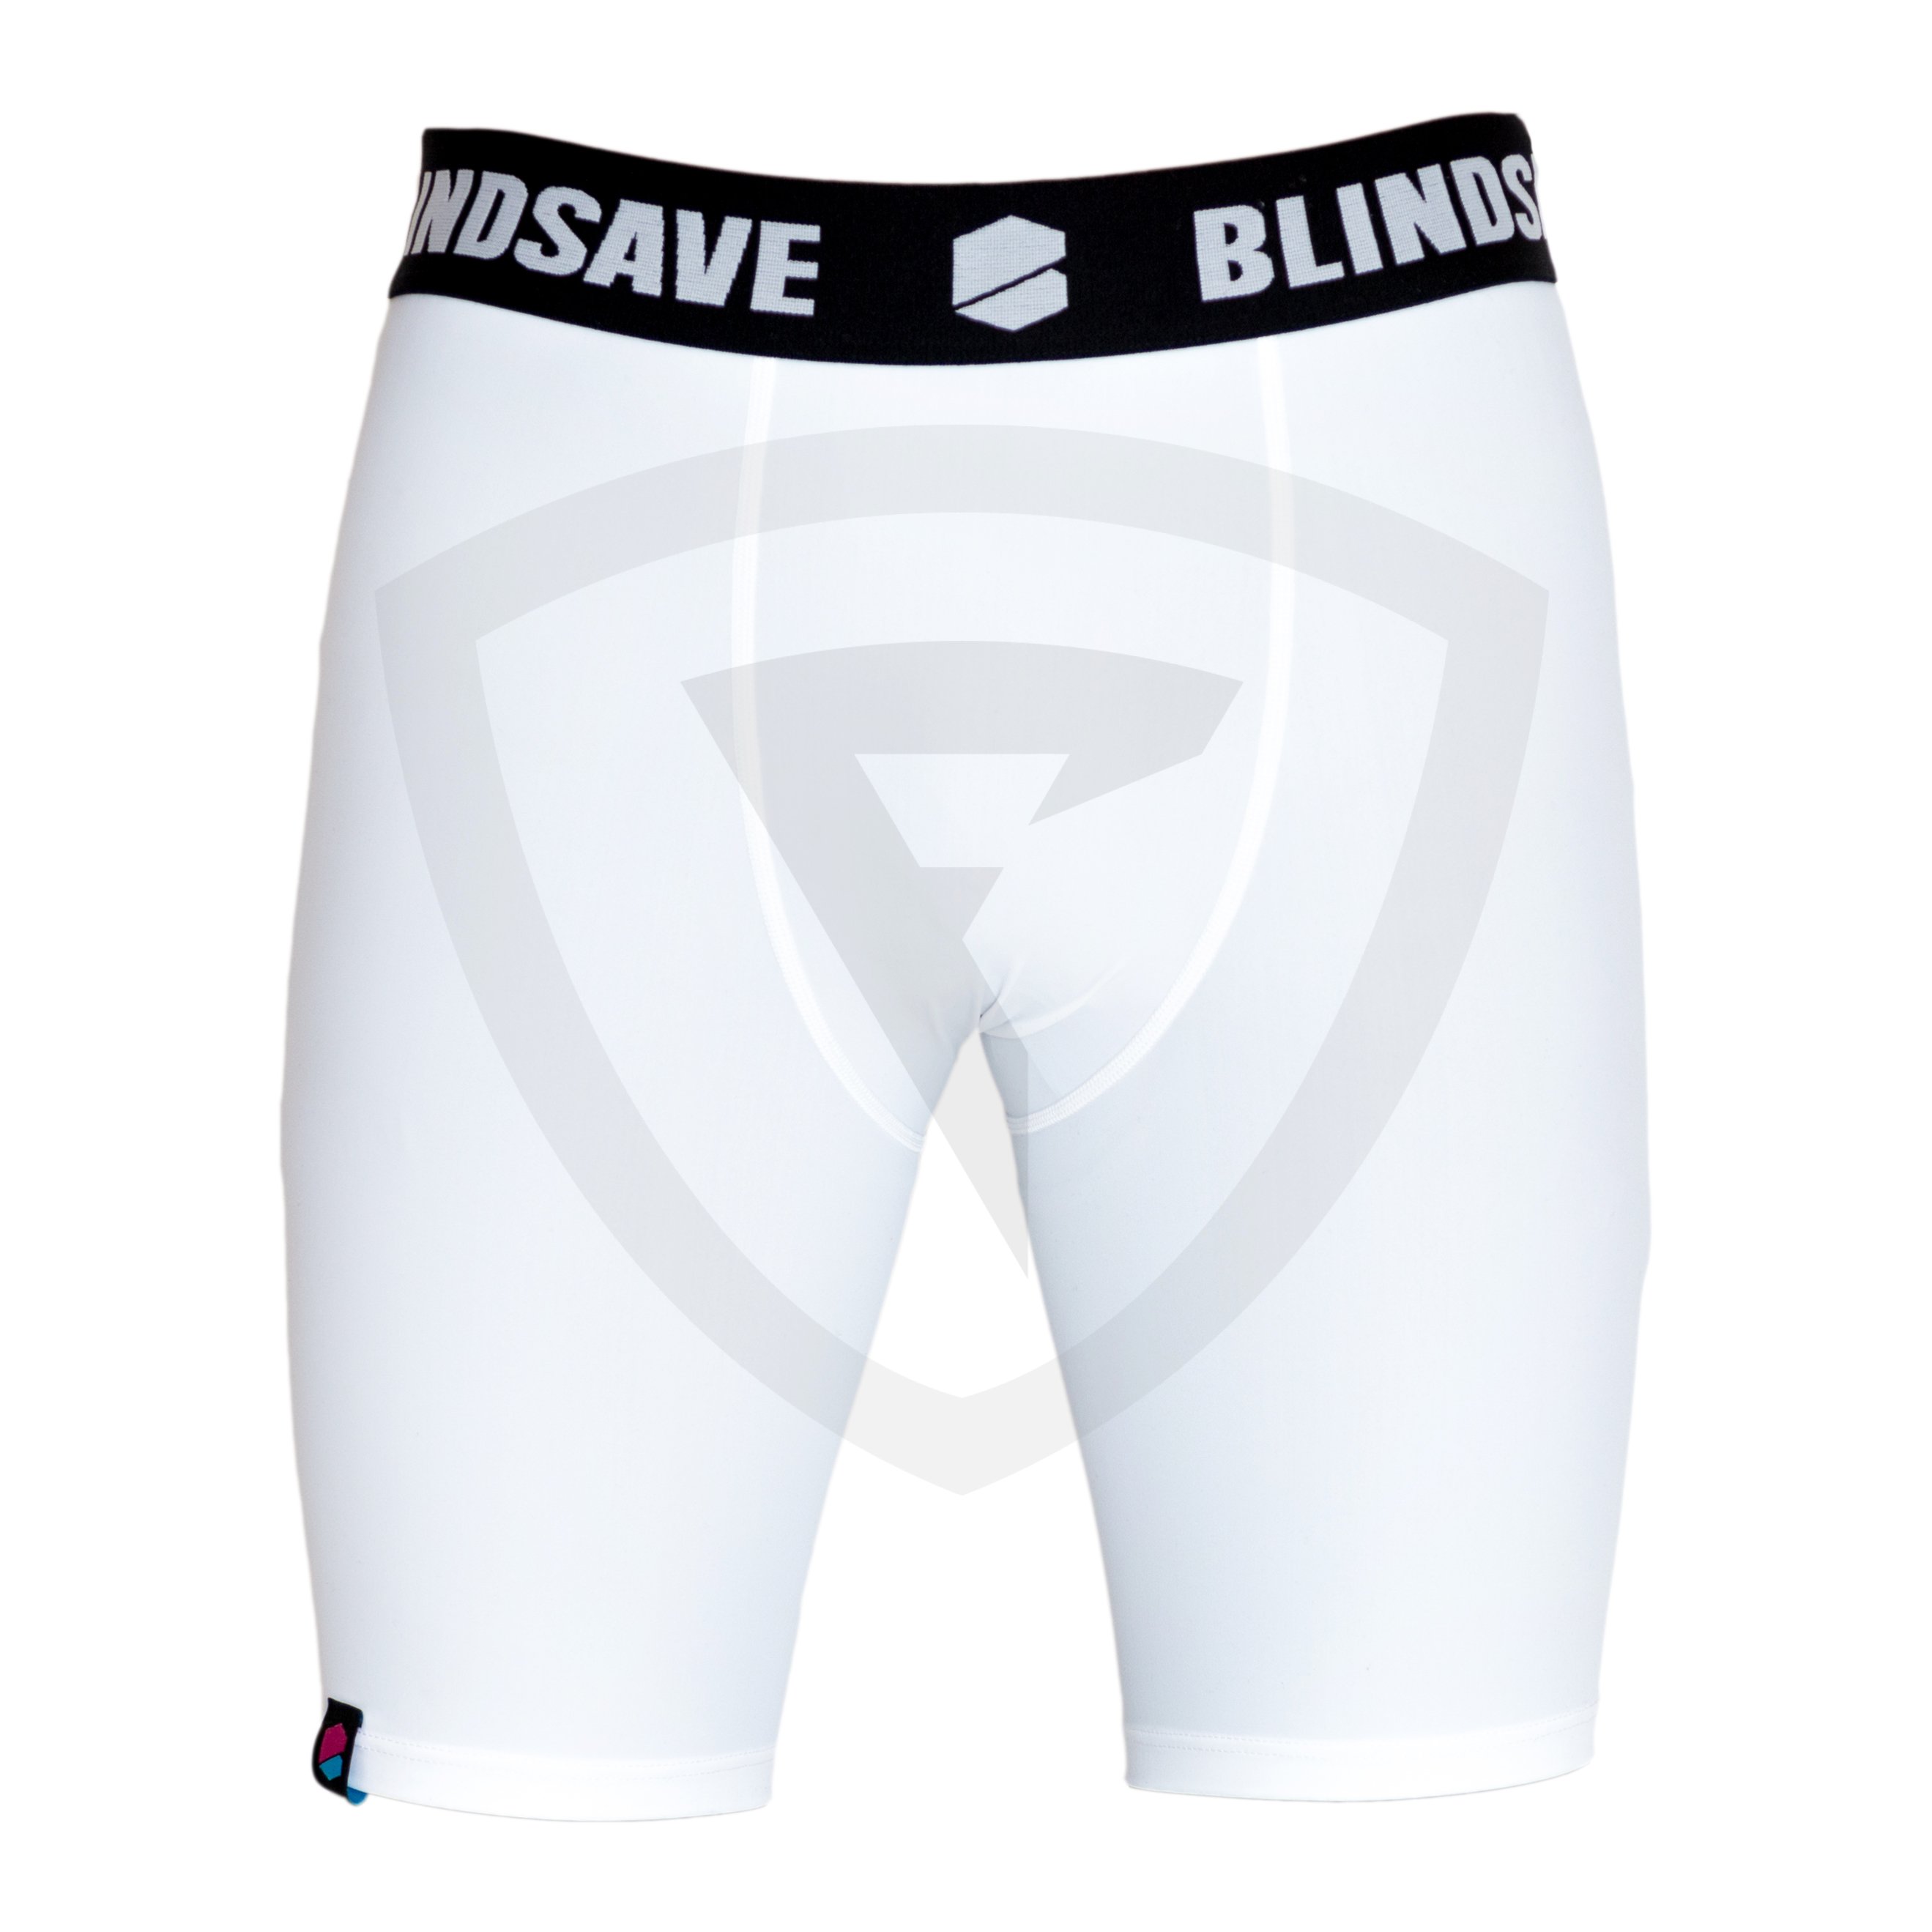 Blindsave Compression Shorts XS bílá